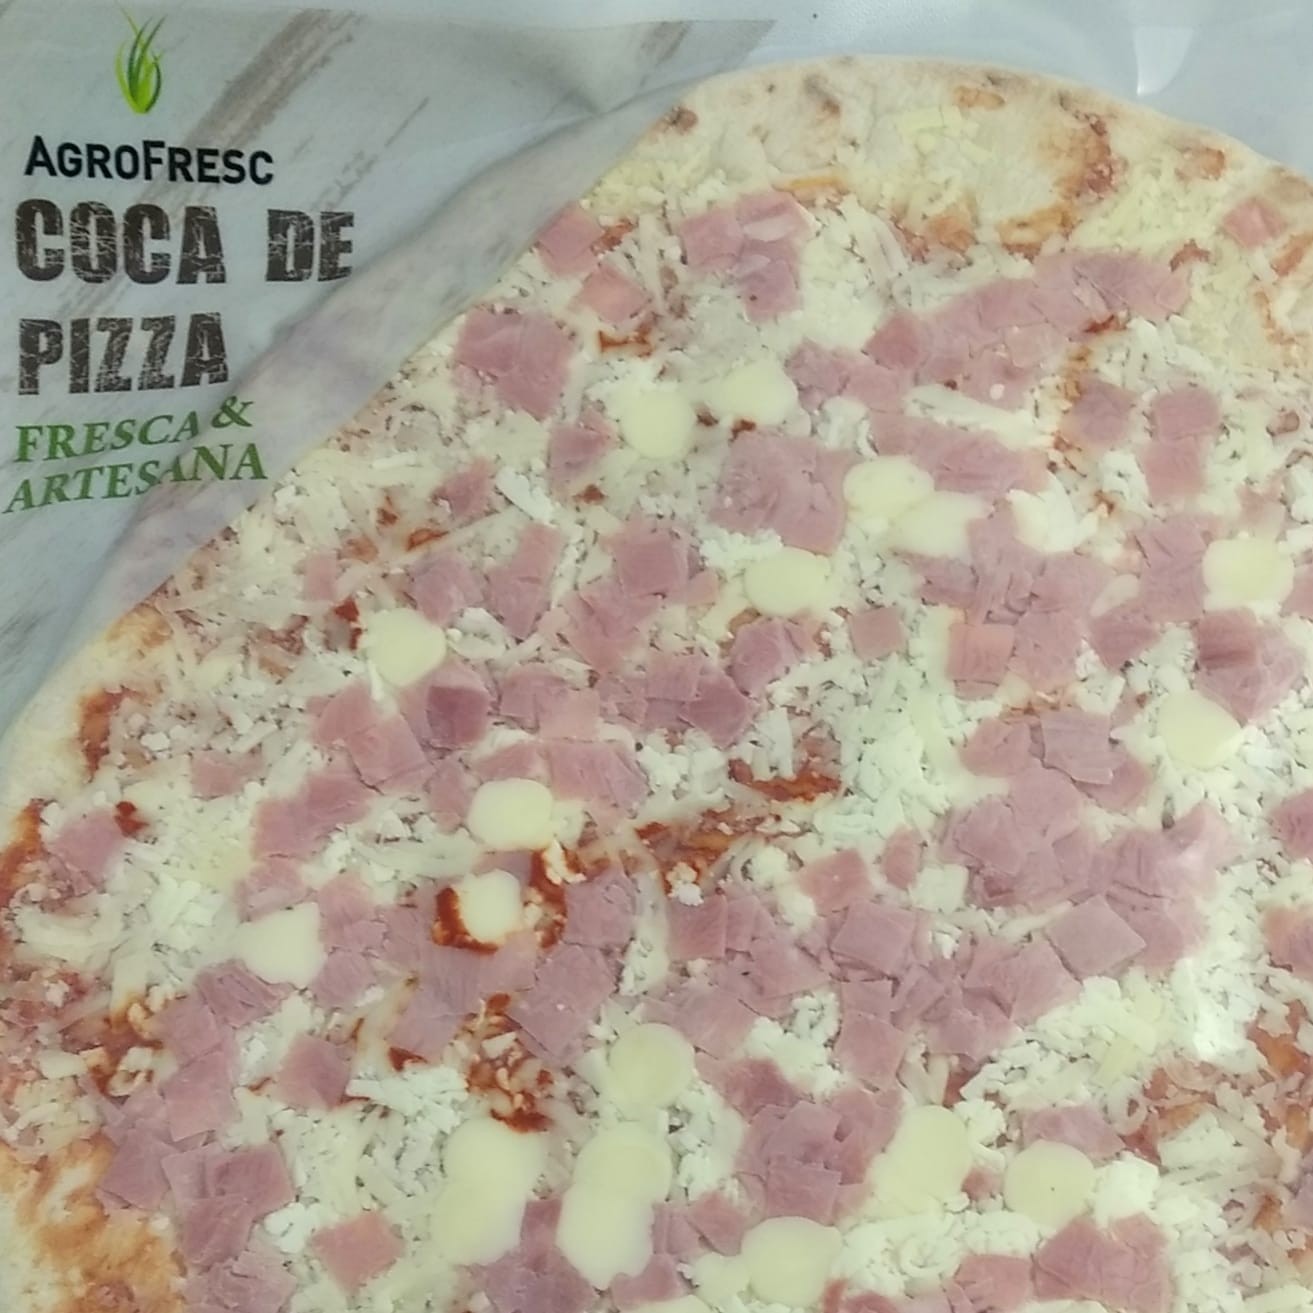 COCA PIZZA DE PERNIL I FORMATGE